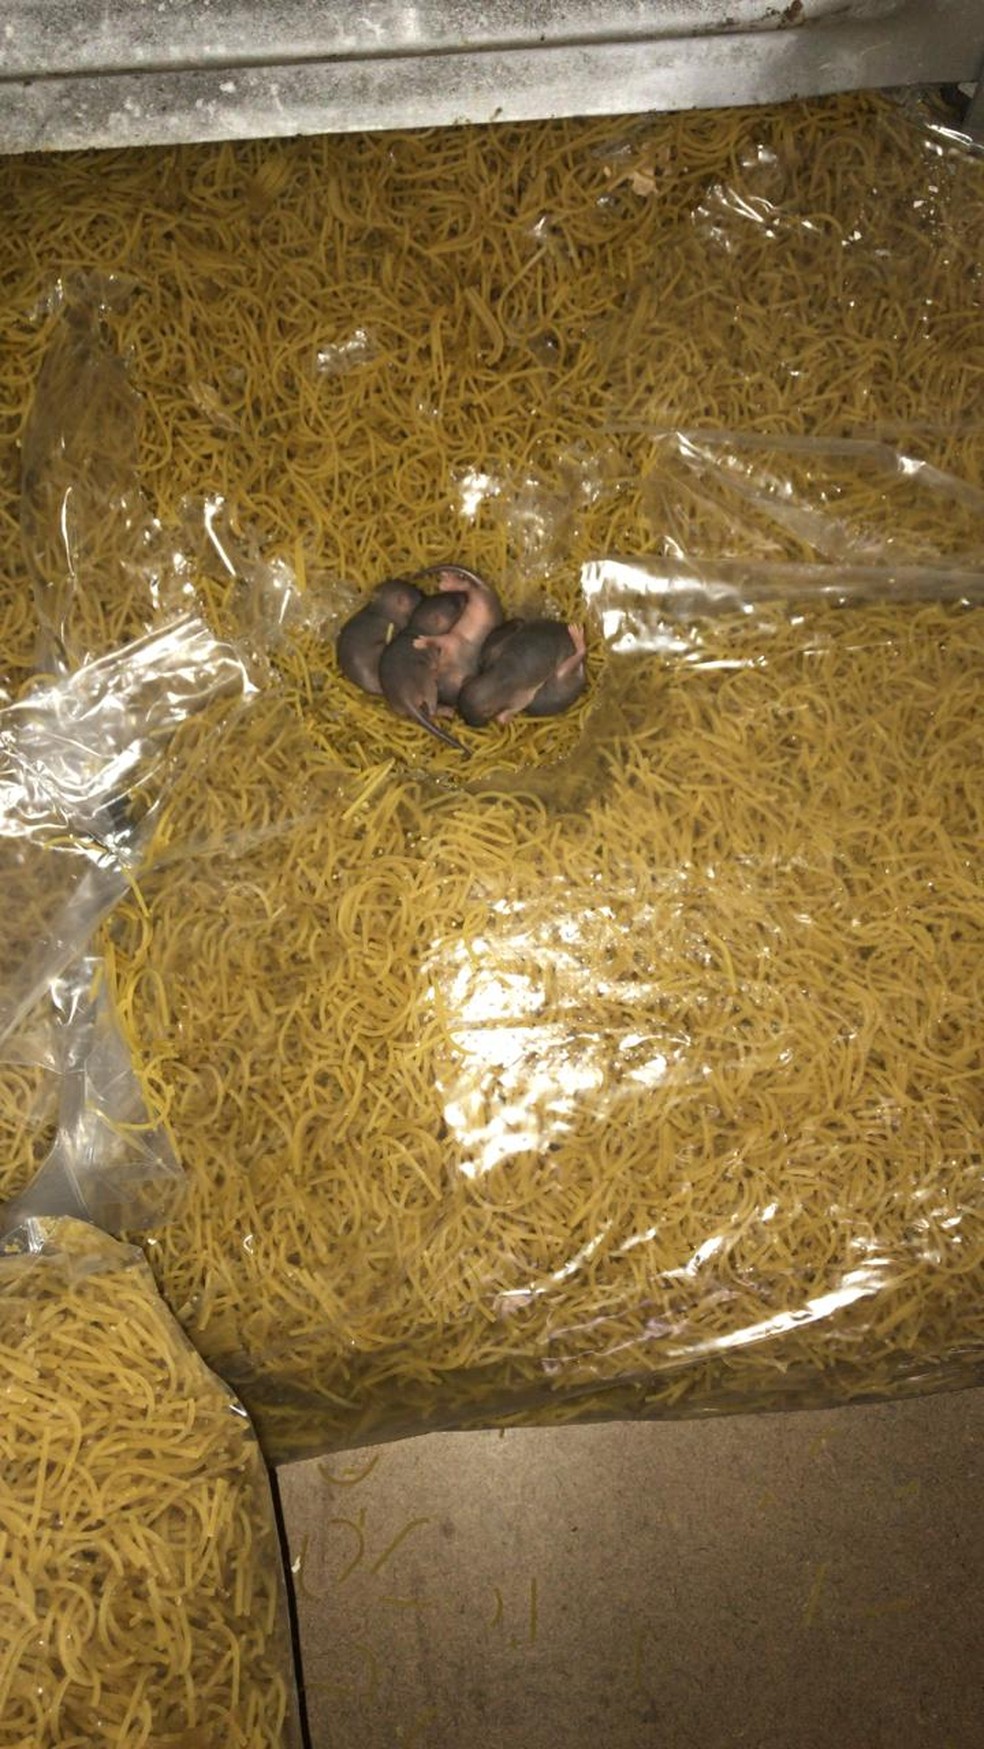 Filhotes de ratos foram encontrados em cima de pacotes de macarrÃ£o em galpÃ£o â?? Foto: ReproduÃ§Ã£o/Arquivo Pessoal